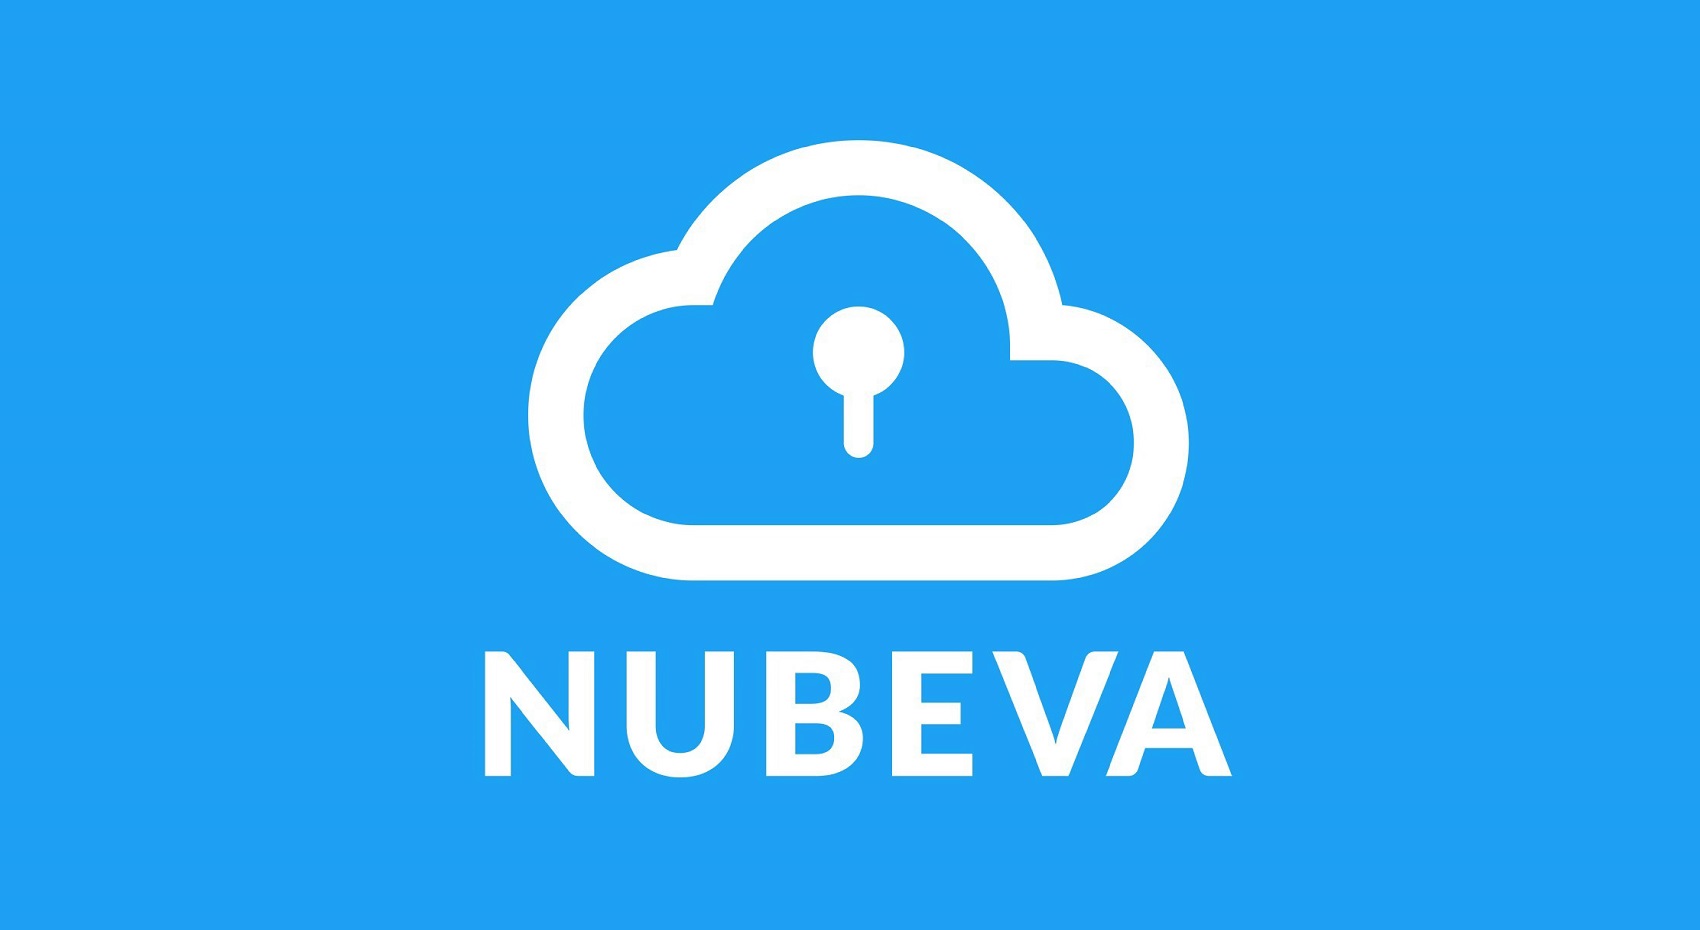 Nubeva Enters Into S